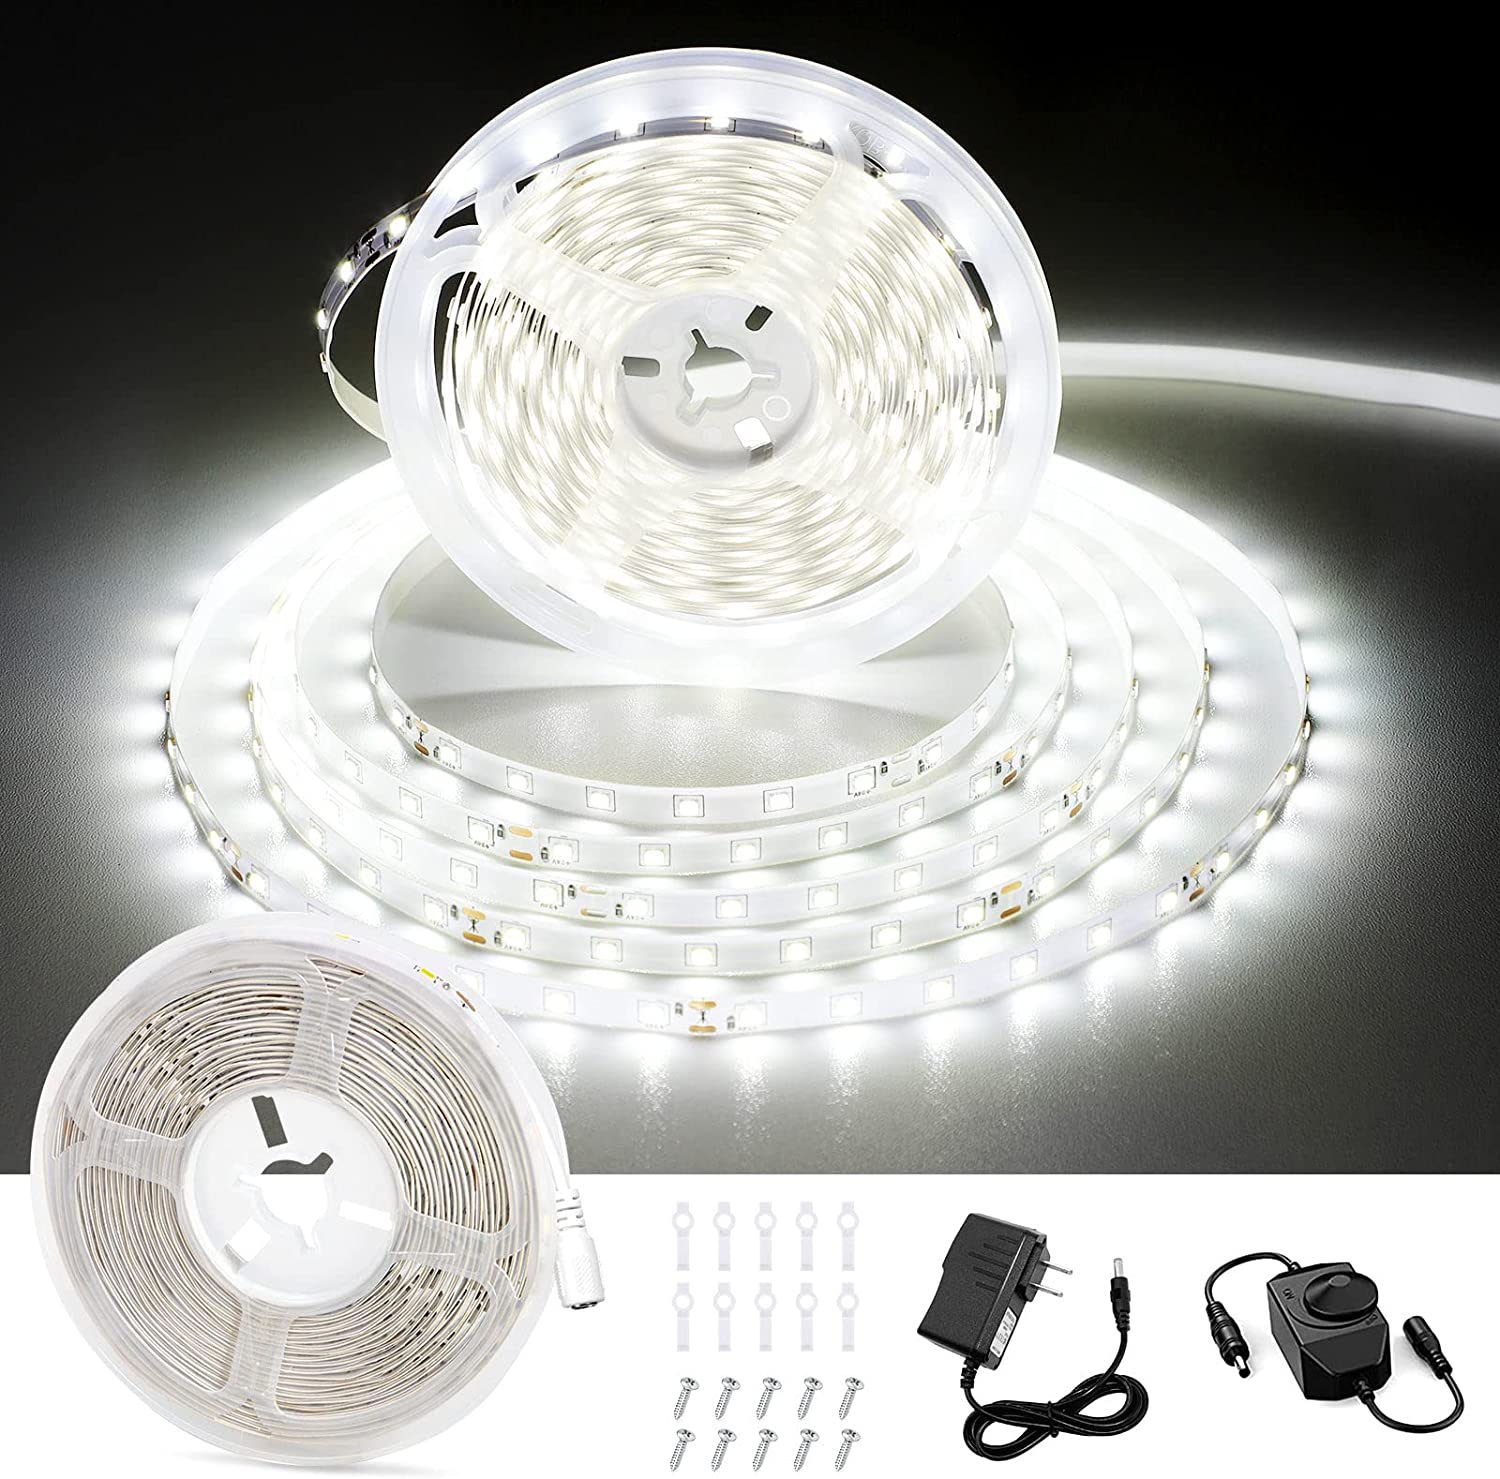 White LED Strip Lights, Bright LED Tape Light, for Indoor Decor - 16.4 Feet